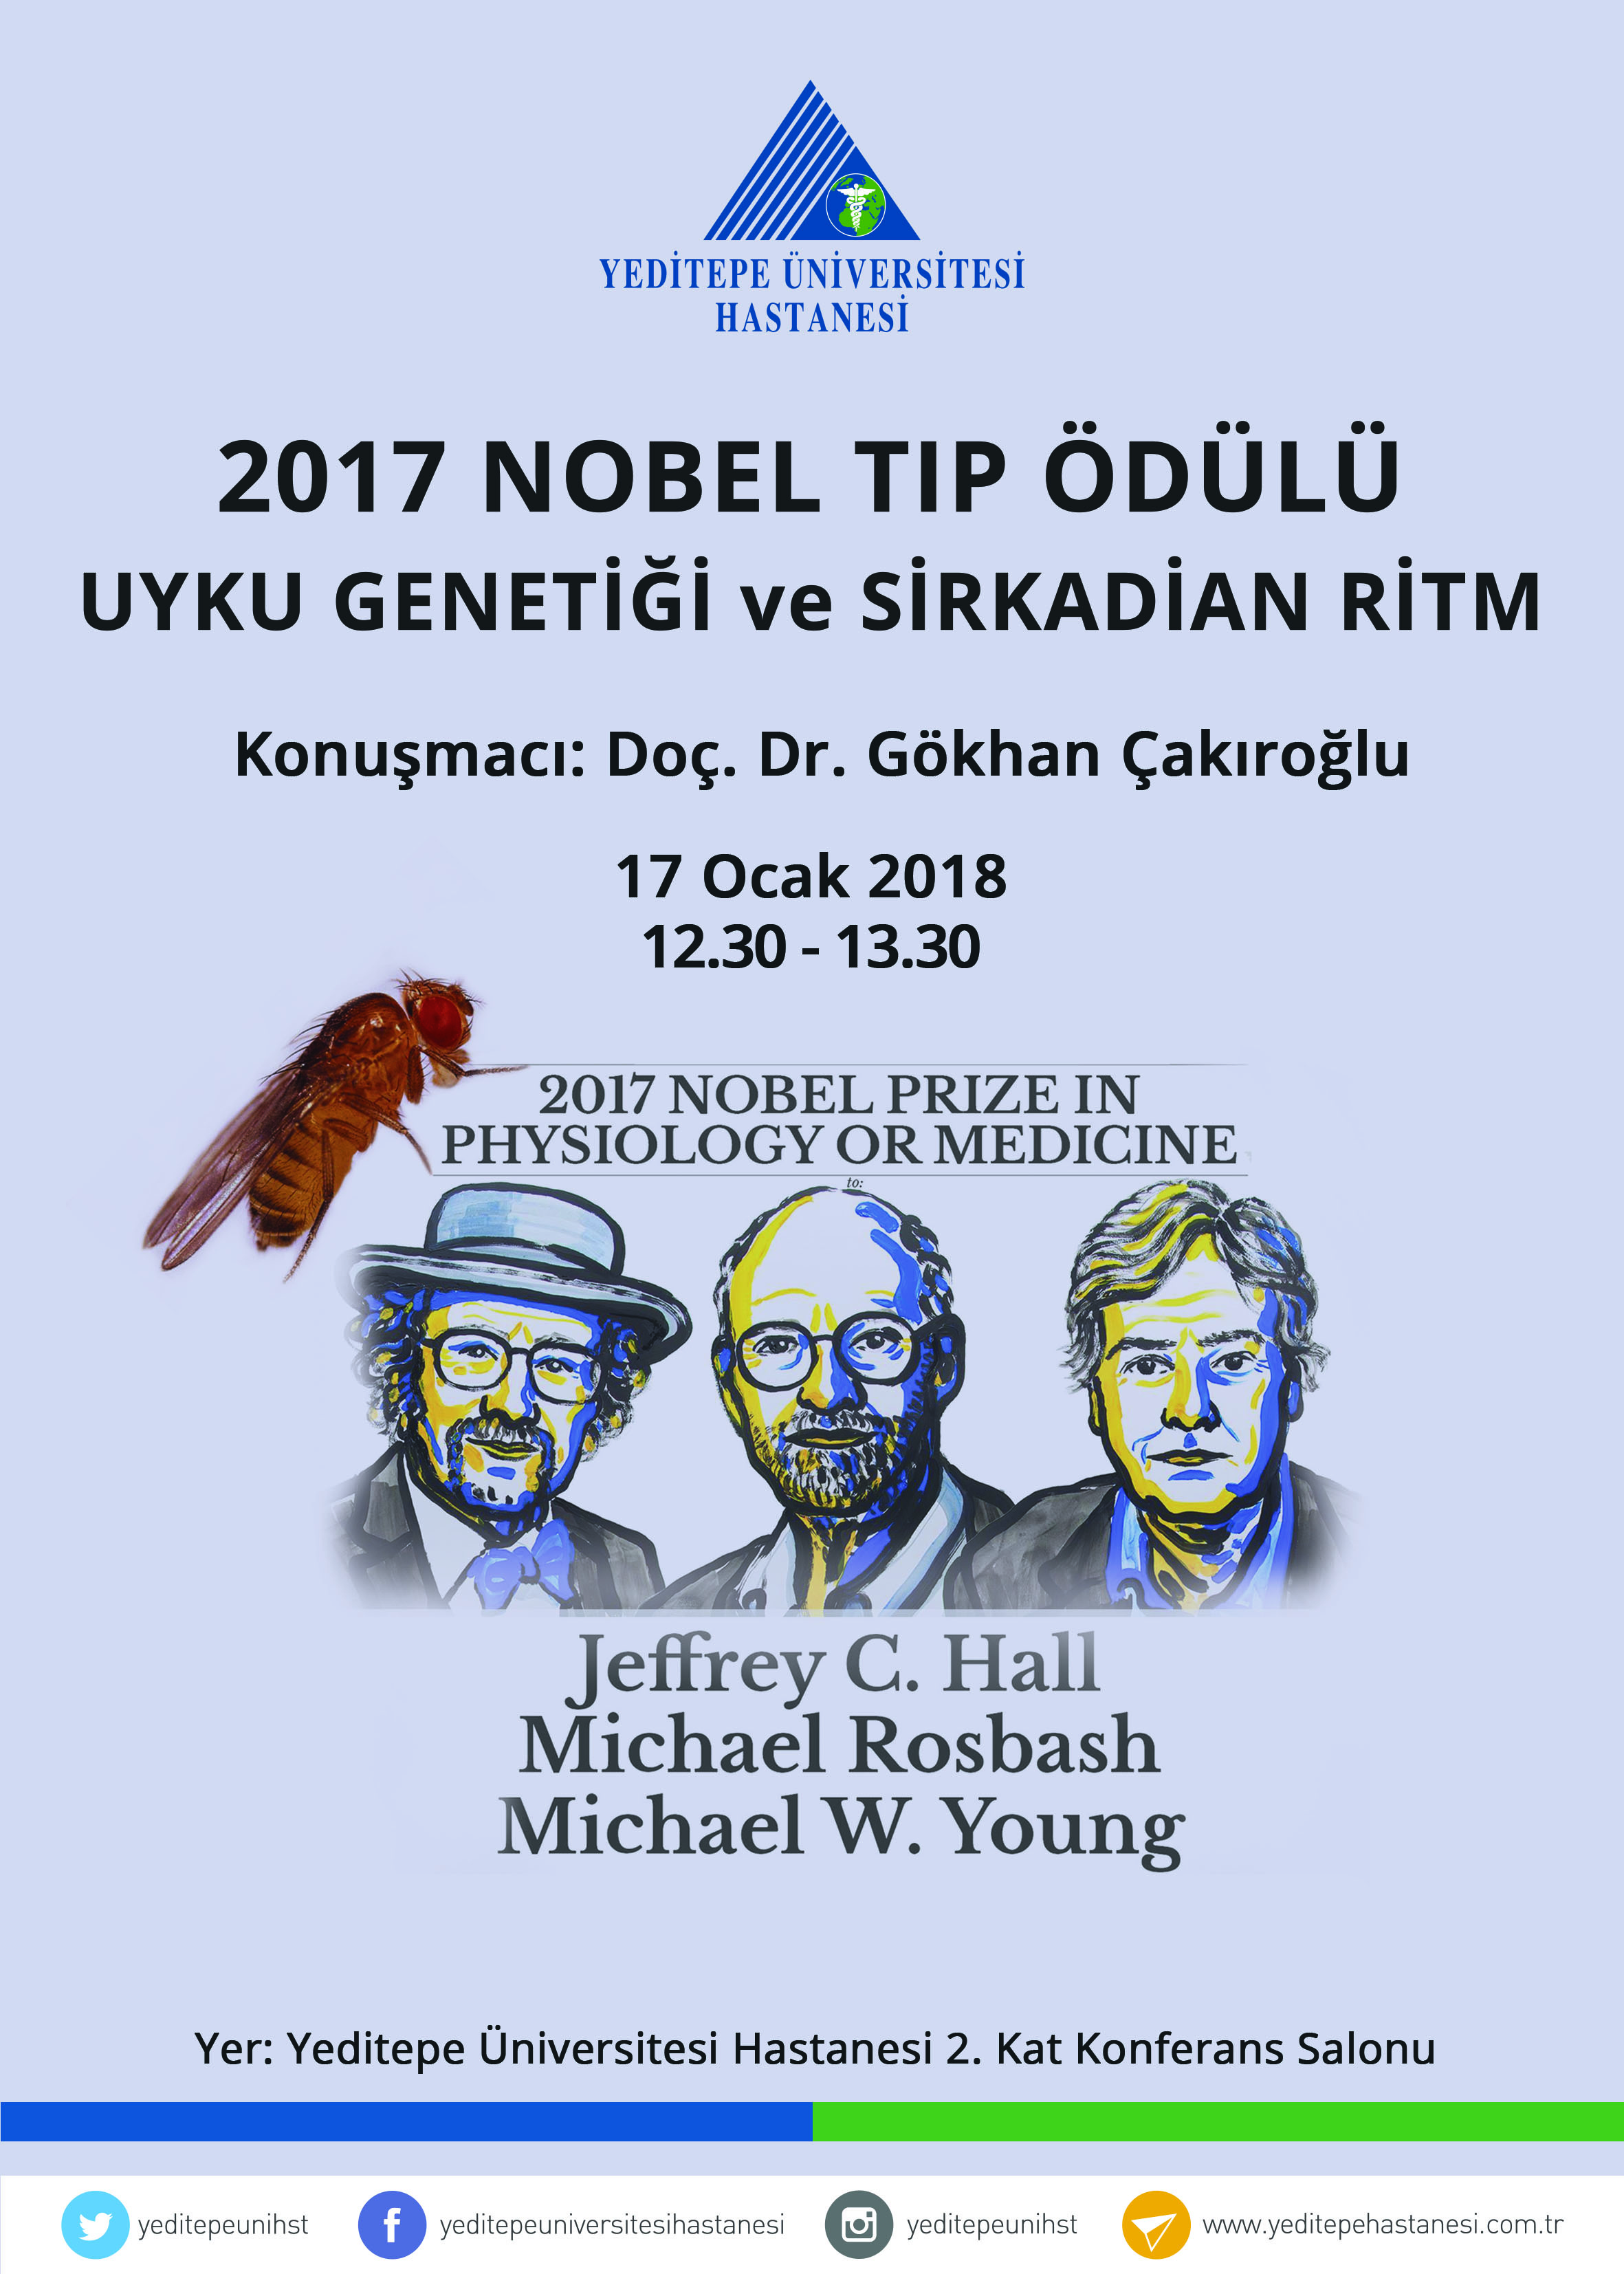 2017 Nobel Tıp Ödülü - Uyku Genetiği ve Sirkadian Ritm Konferansı 